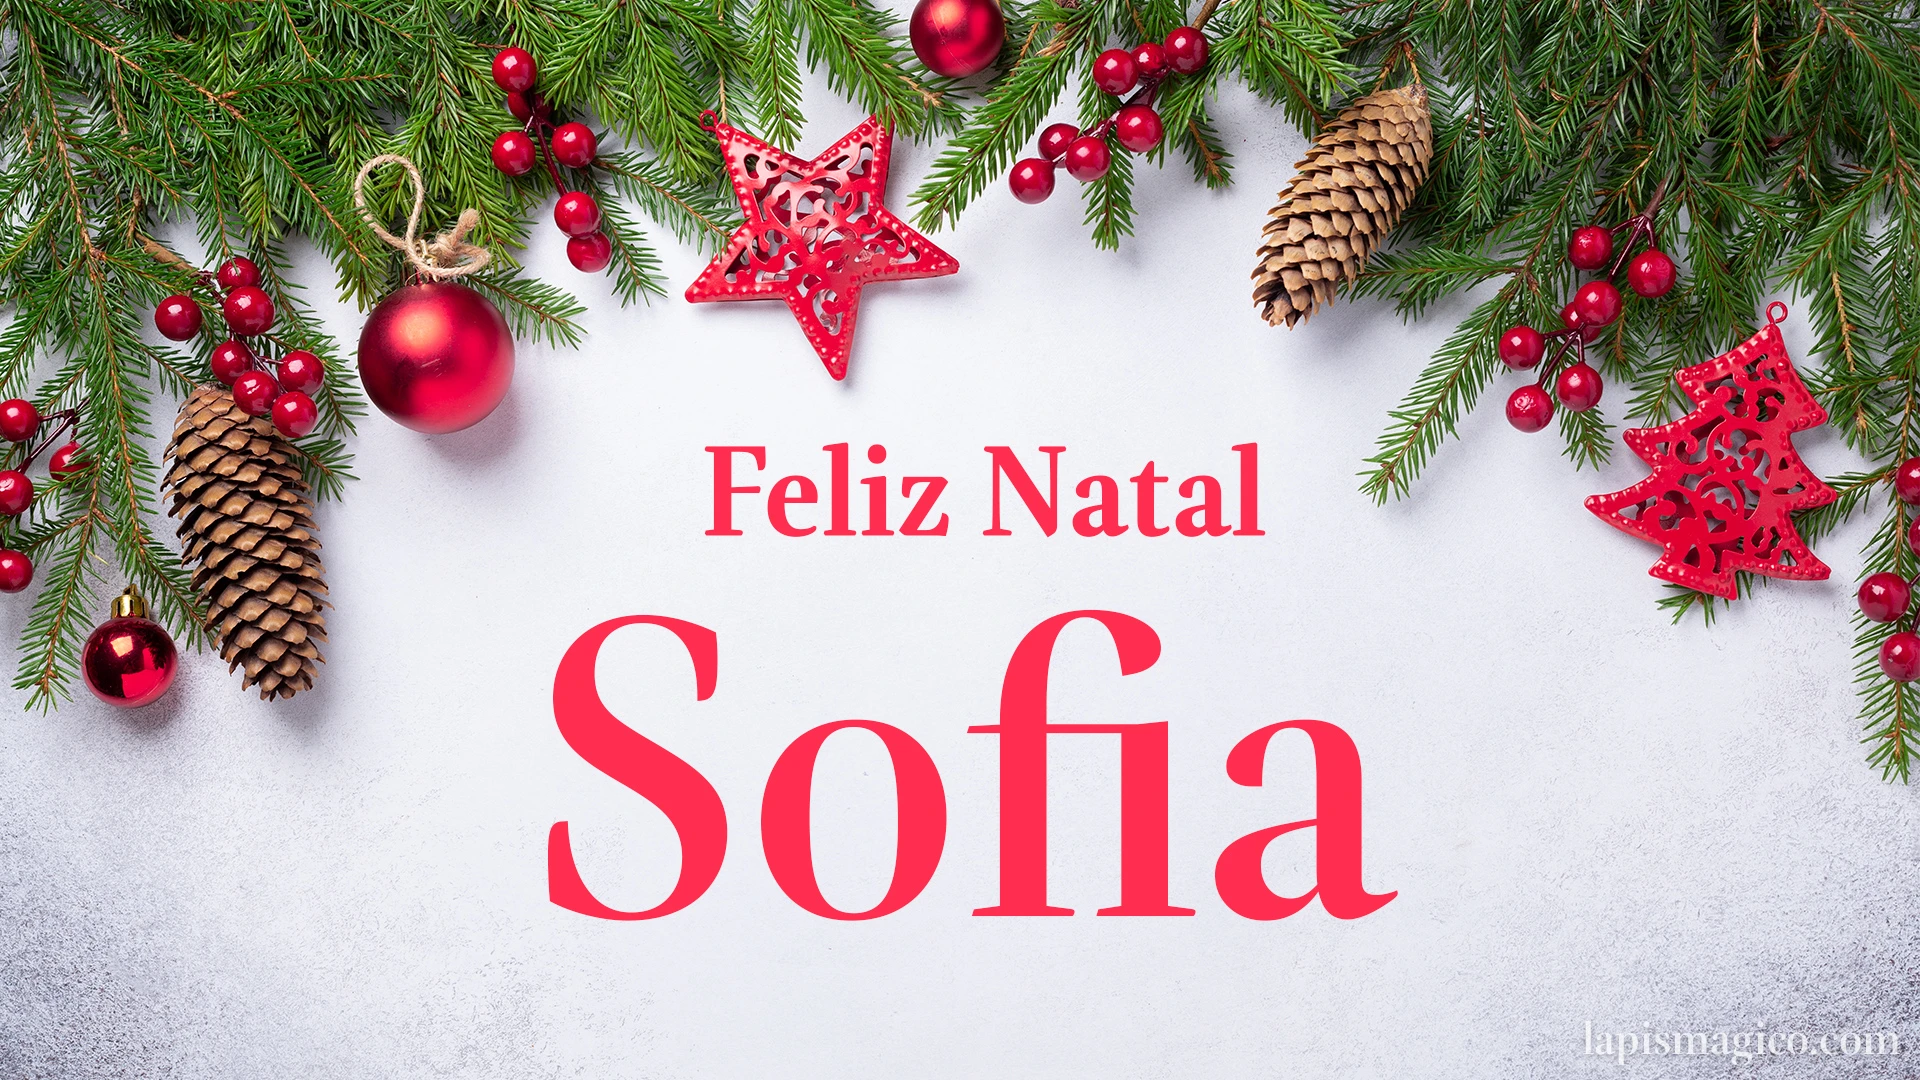 Oh Sofia, cinco postais de Feliz Natal Postal com o teu nome